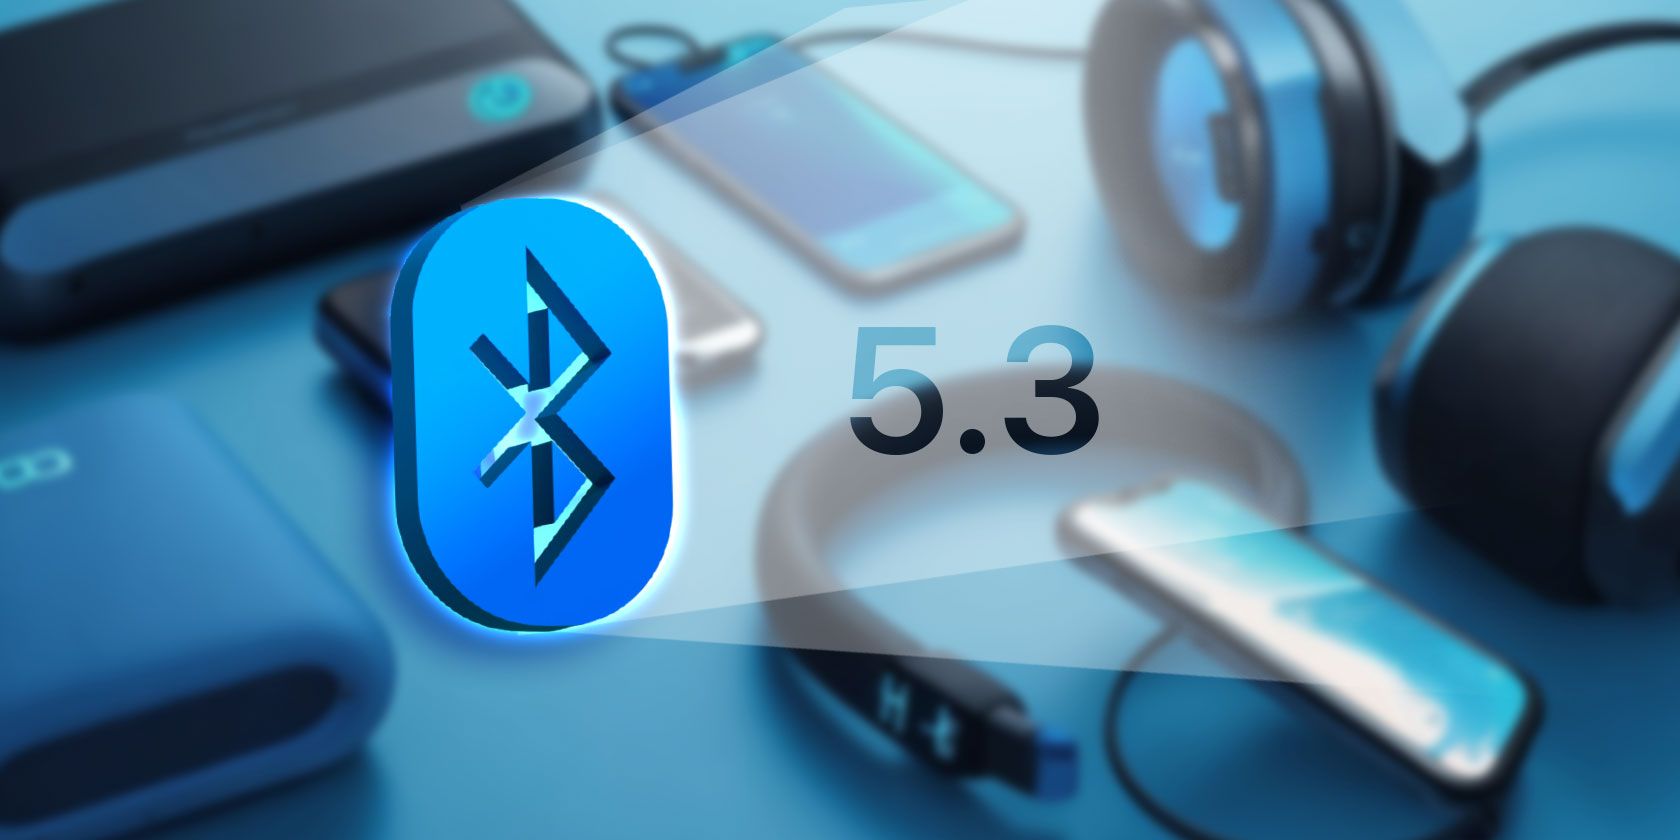 Sur iPhoneIslam.com, le logo Bluetooth 5.3 est affiché bien en évidence avec divers appareils tels que des smartphones, des montres intelligentes et des AirPod en arrière-plan.